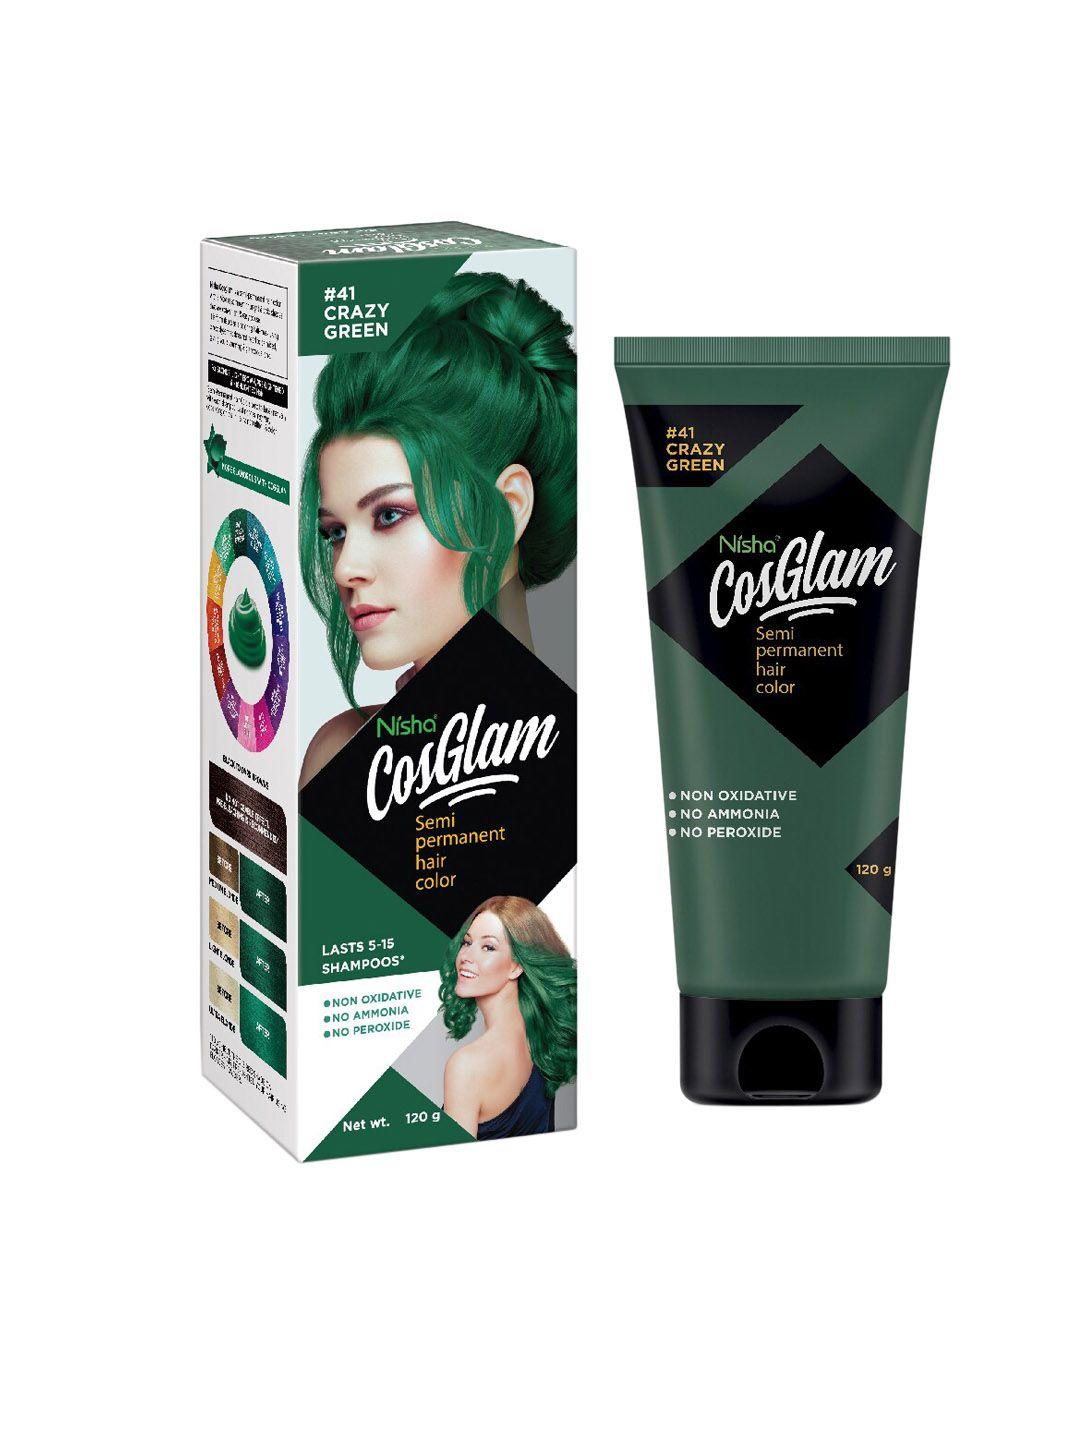 nisha cosglam semi permanent hair color 120 g - crazy green 41